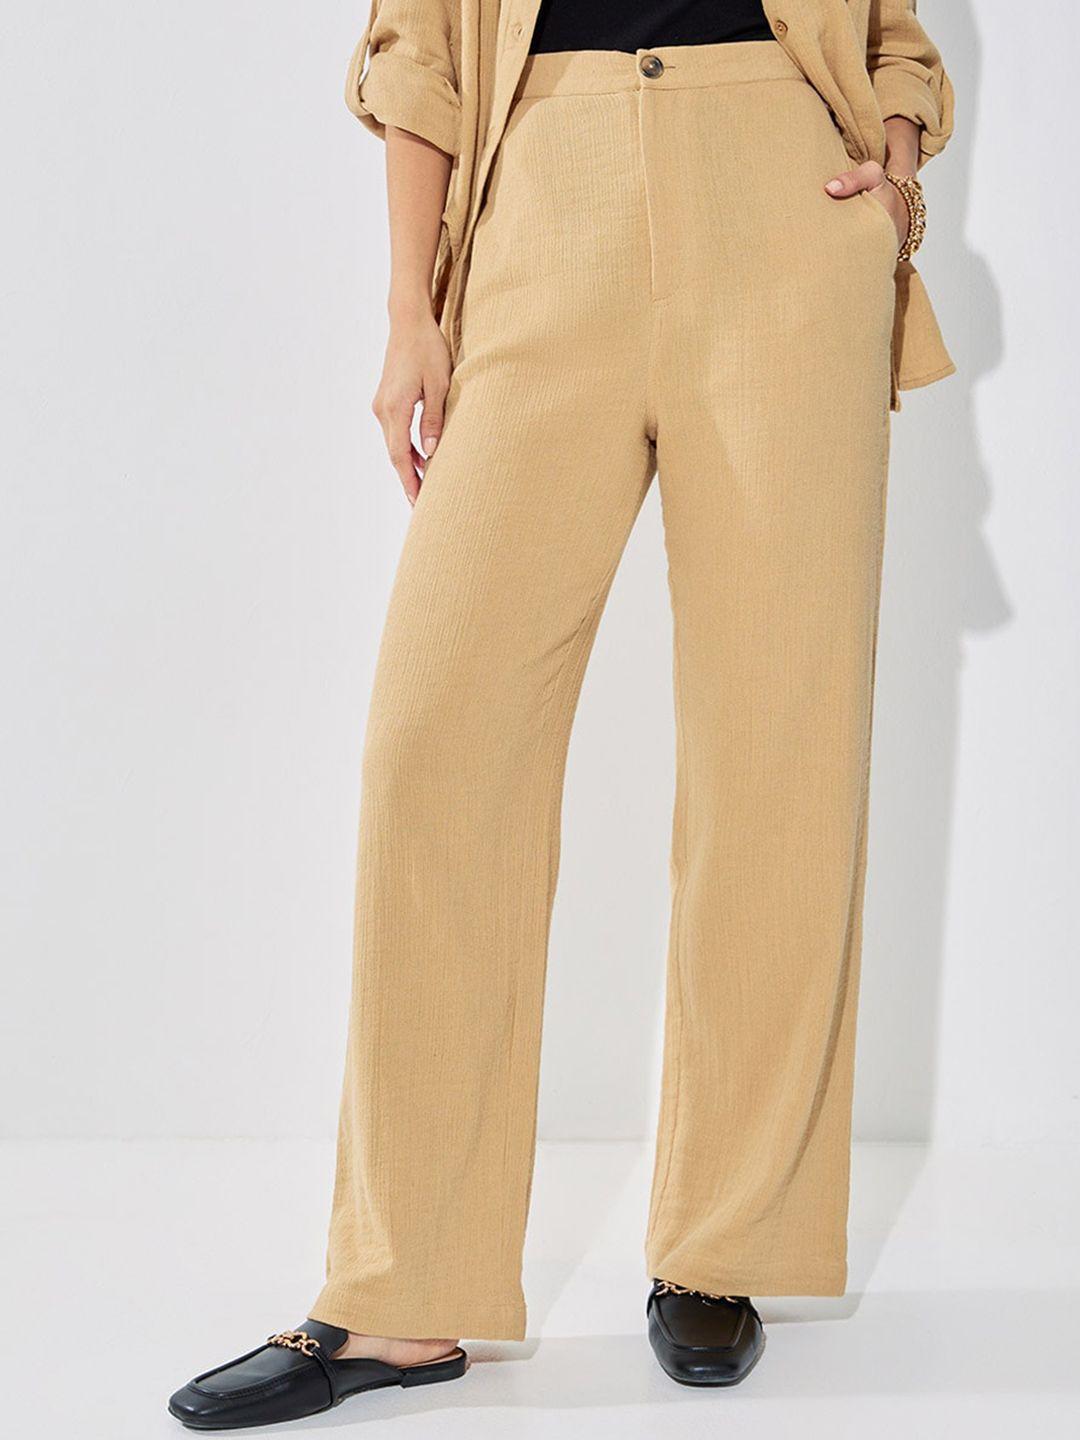 styli women high rise wide leg textured trouser